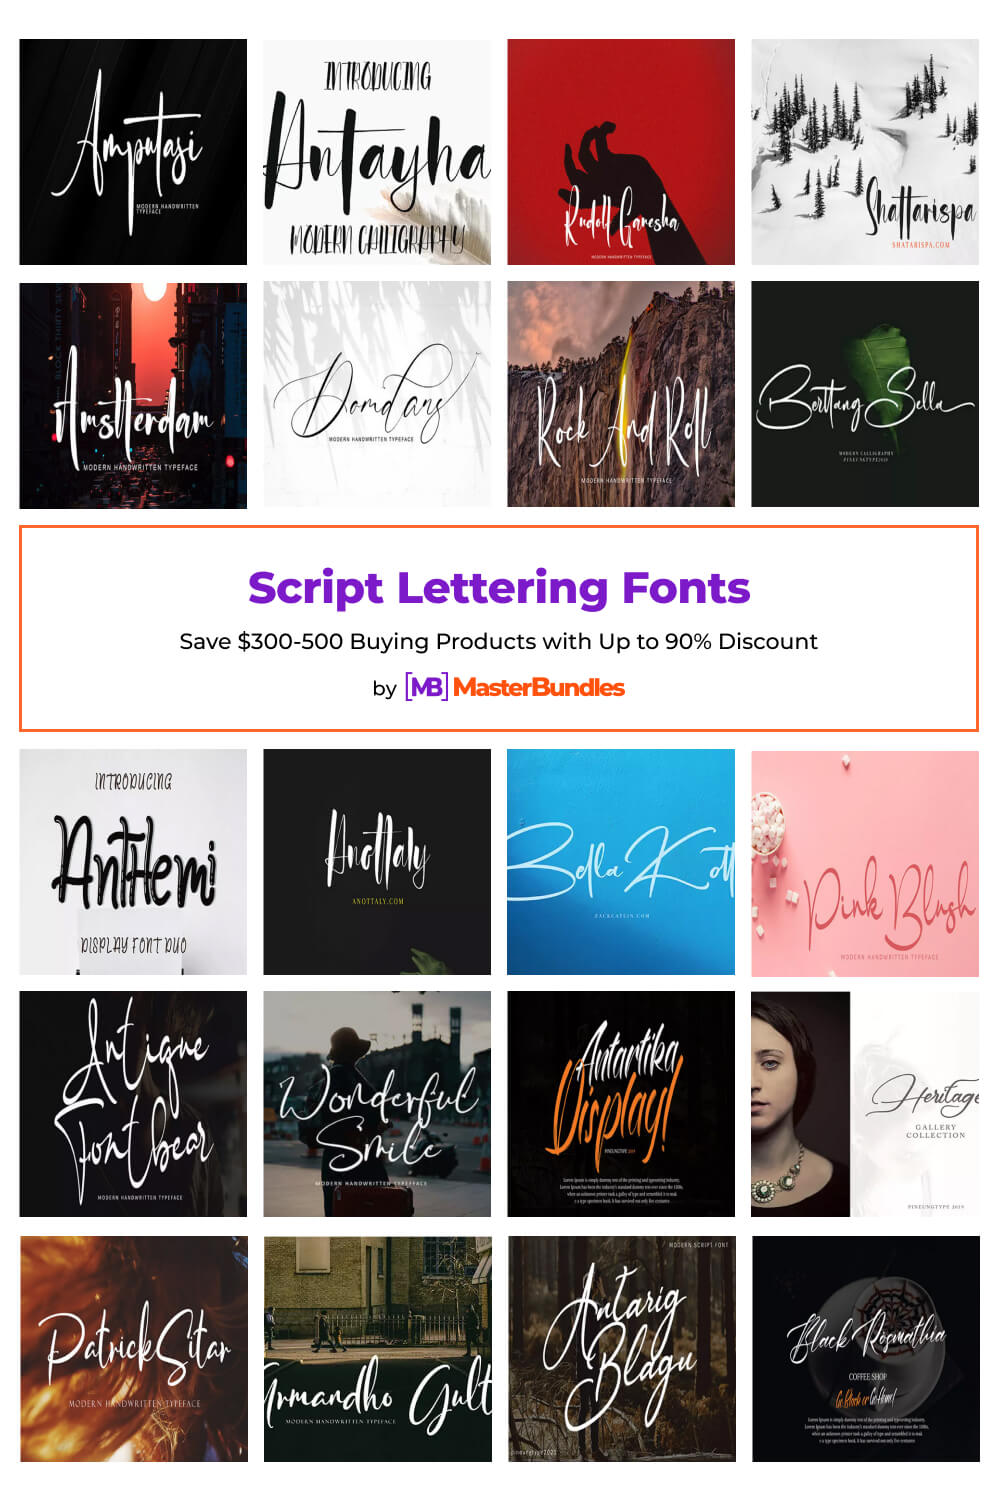 script lettering fonts pinterest image.